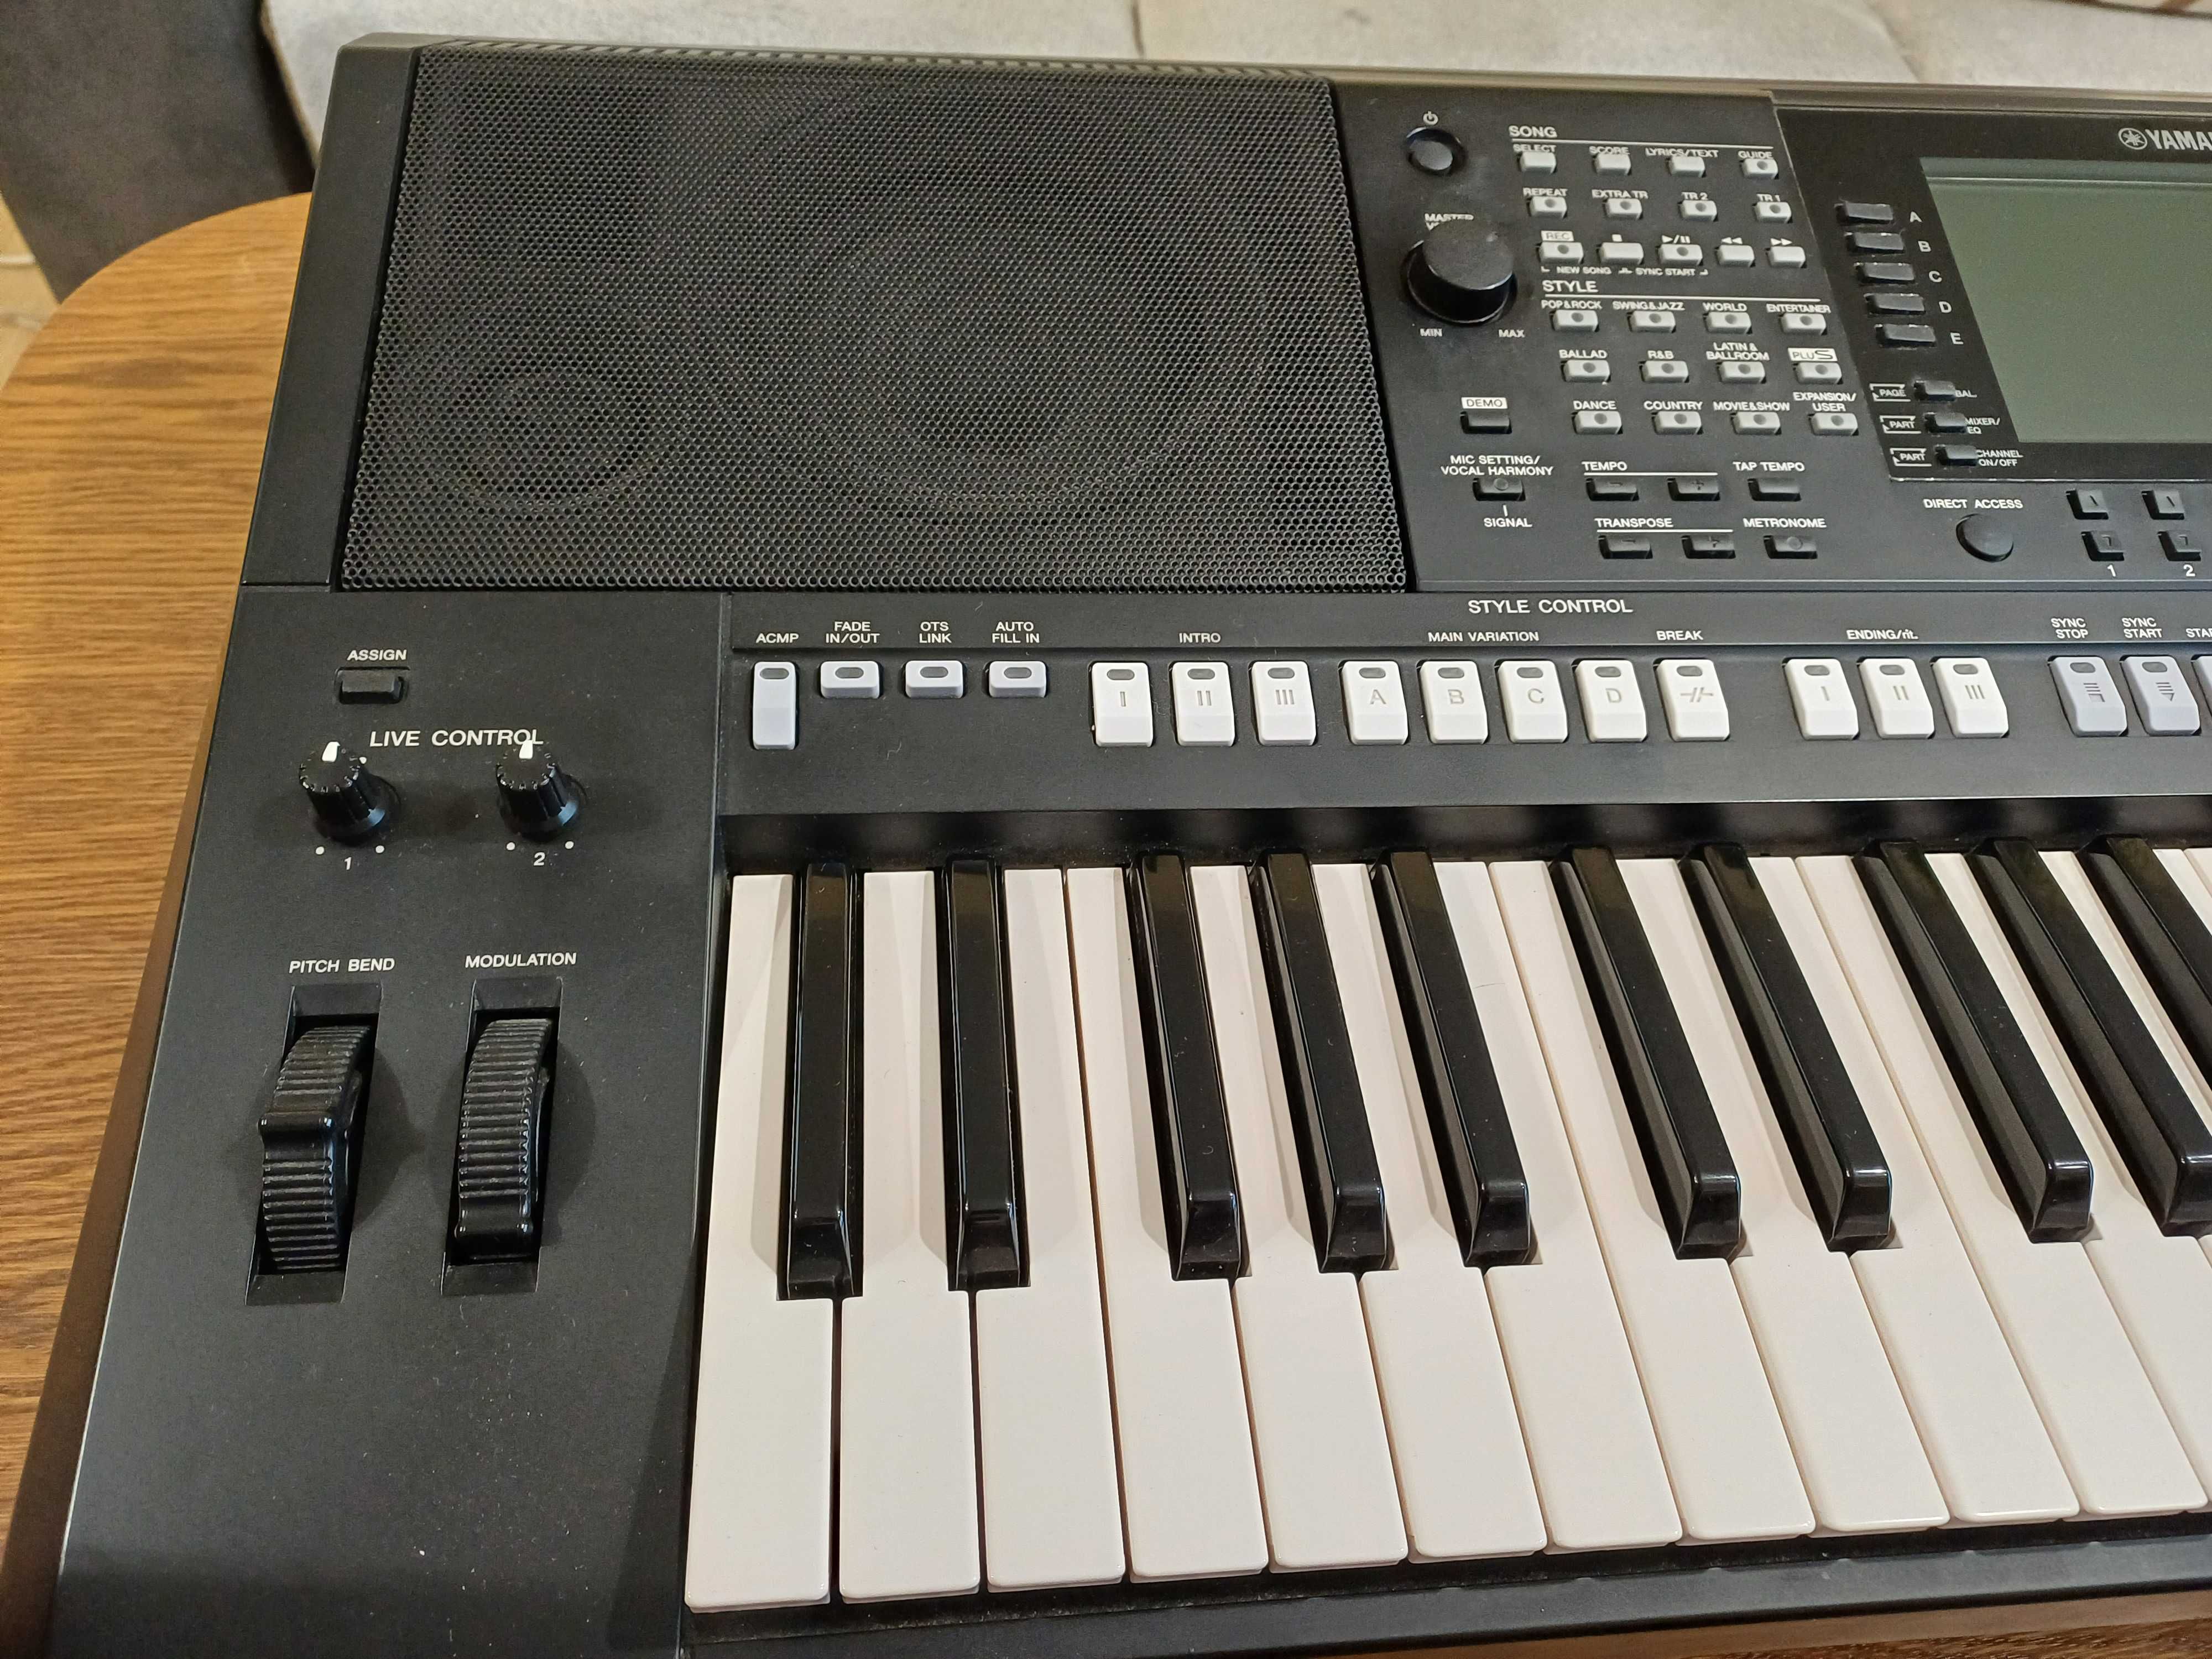 Keyboard Yamaha PSR-S975